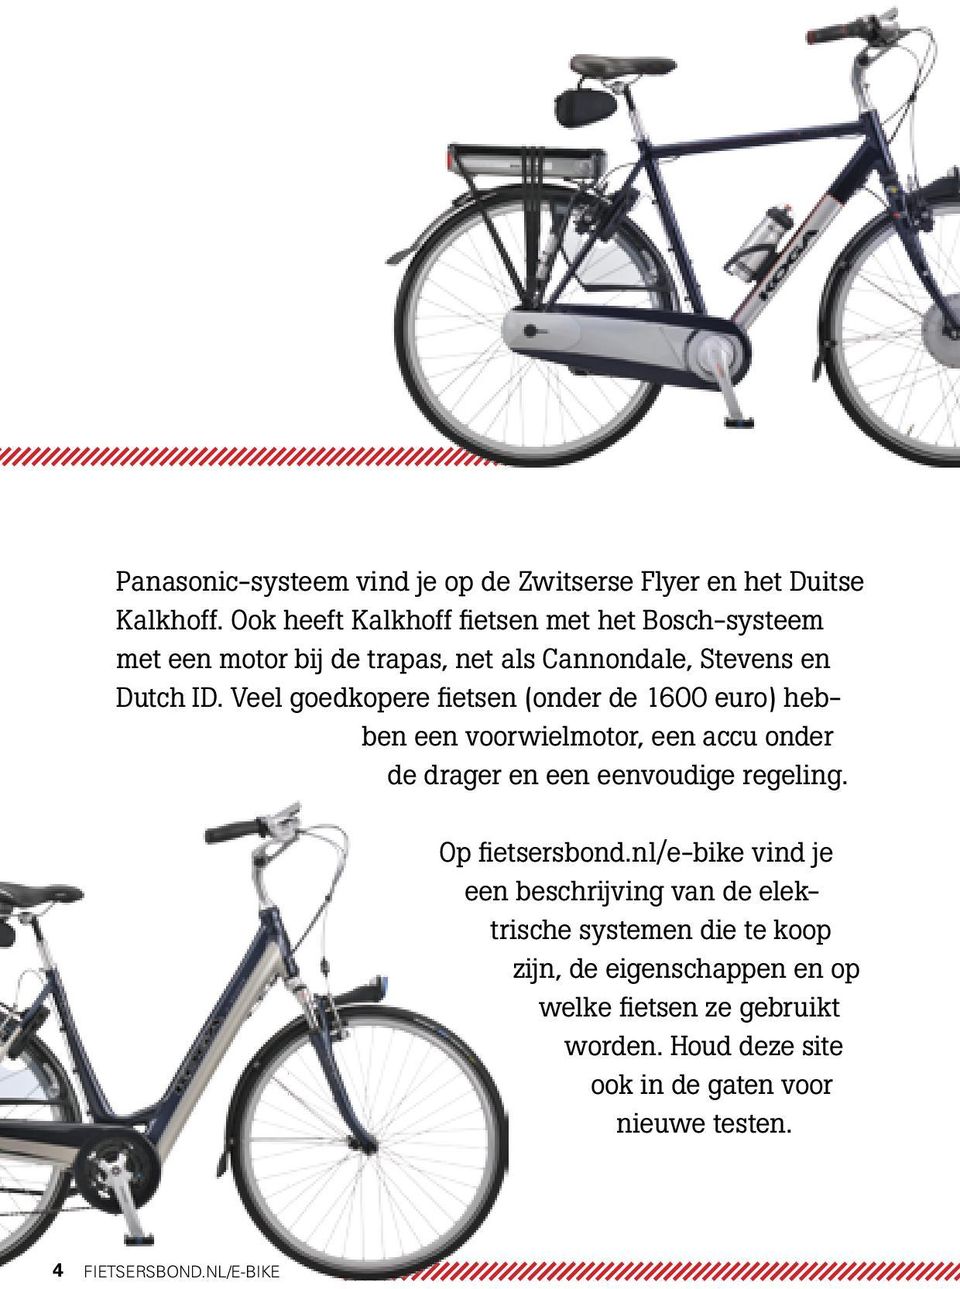 Veel goedkopere fietsen (onder de 1600 euro) hebben een voorwielmotor, een accu onder de drager en een eenvoudige regeling.